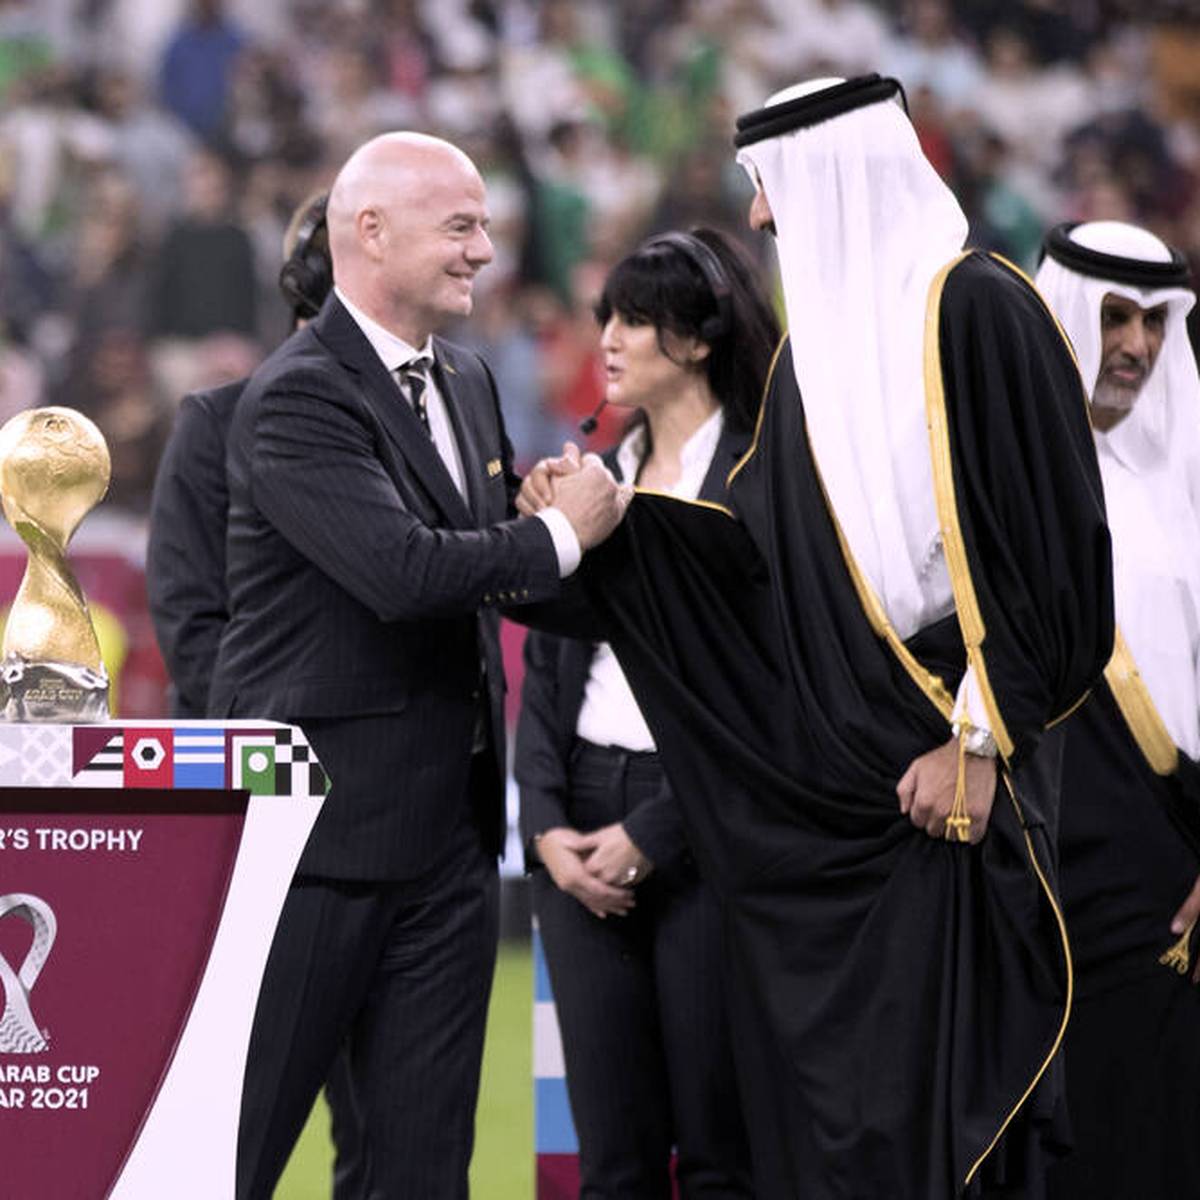 FIFA-Boss Gianni Infantino lebt offenbar inzwischen im WM-Gastgeberland Katar. Sein Umzug wird von reichlich Kritik begleitet.